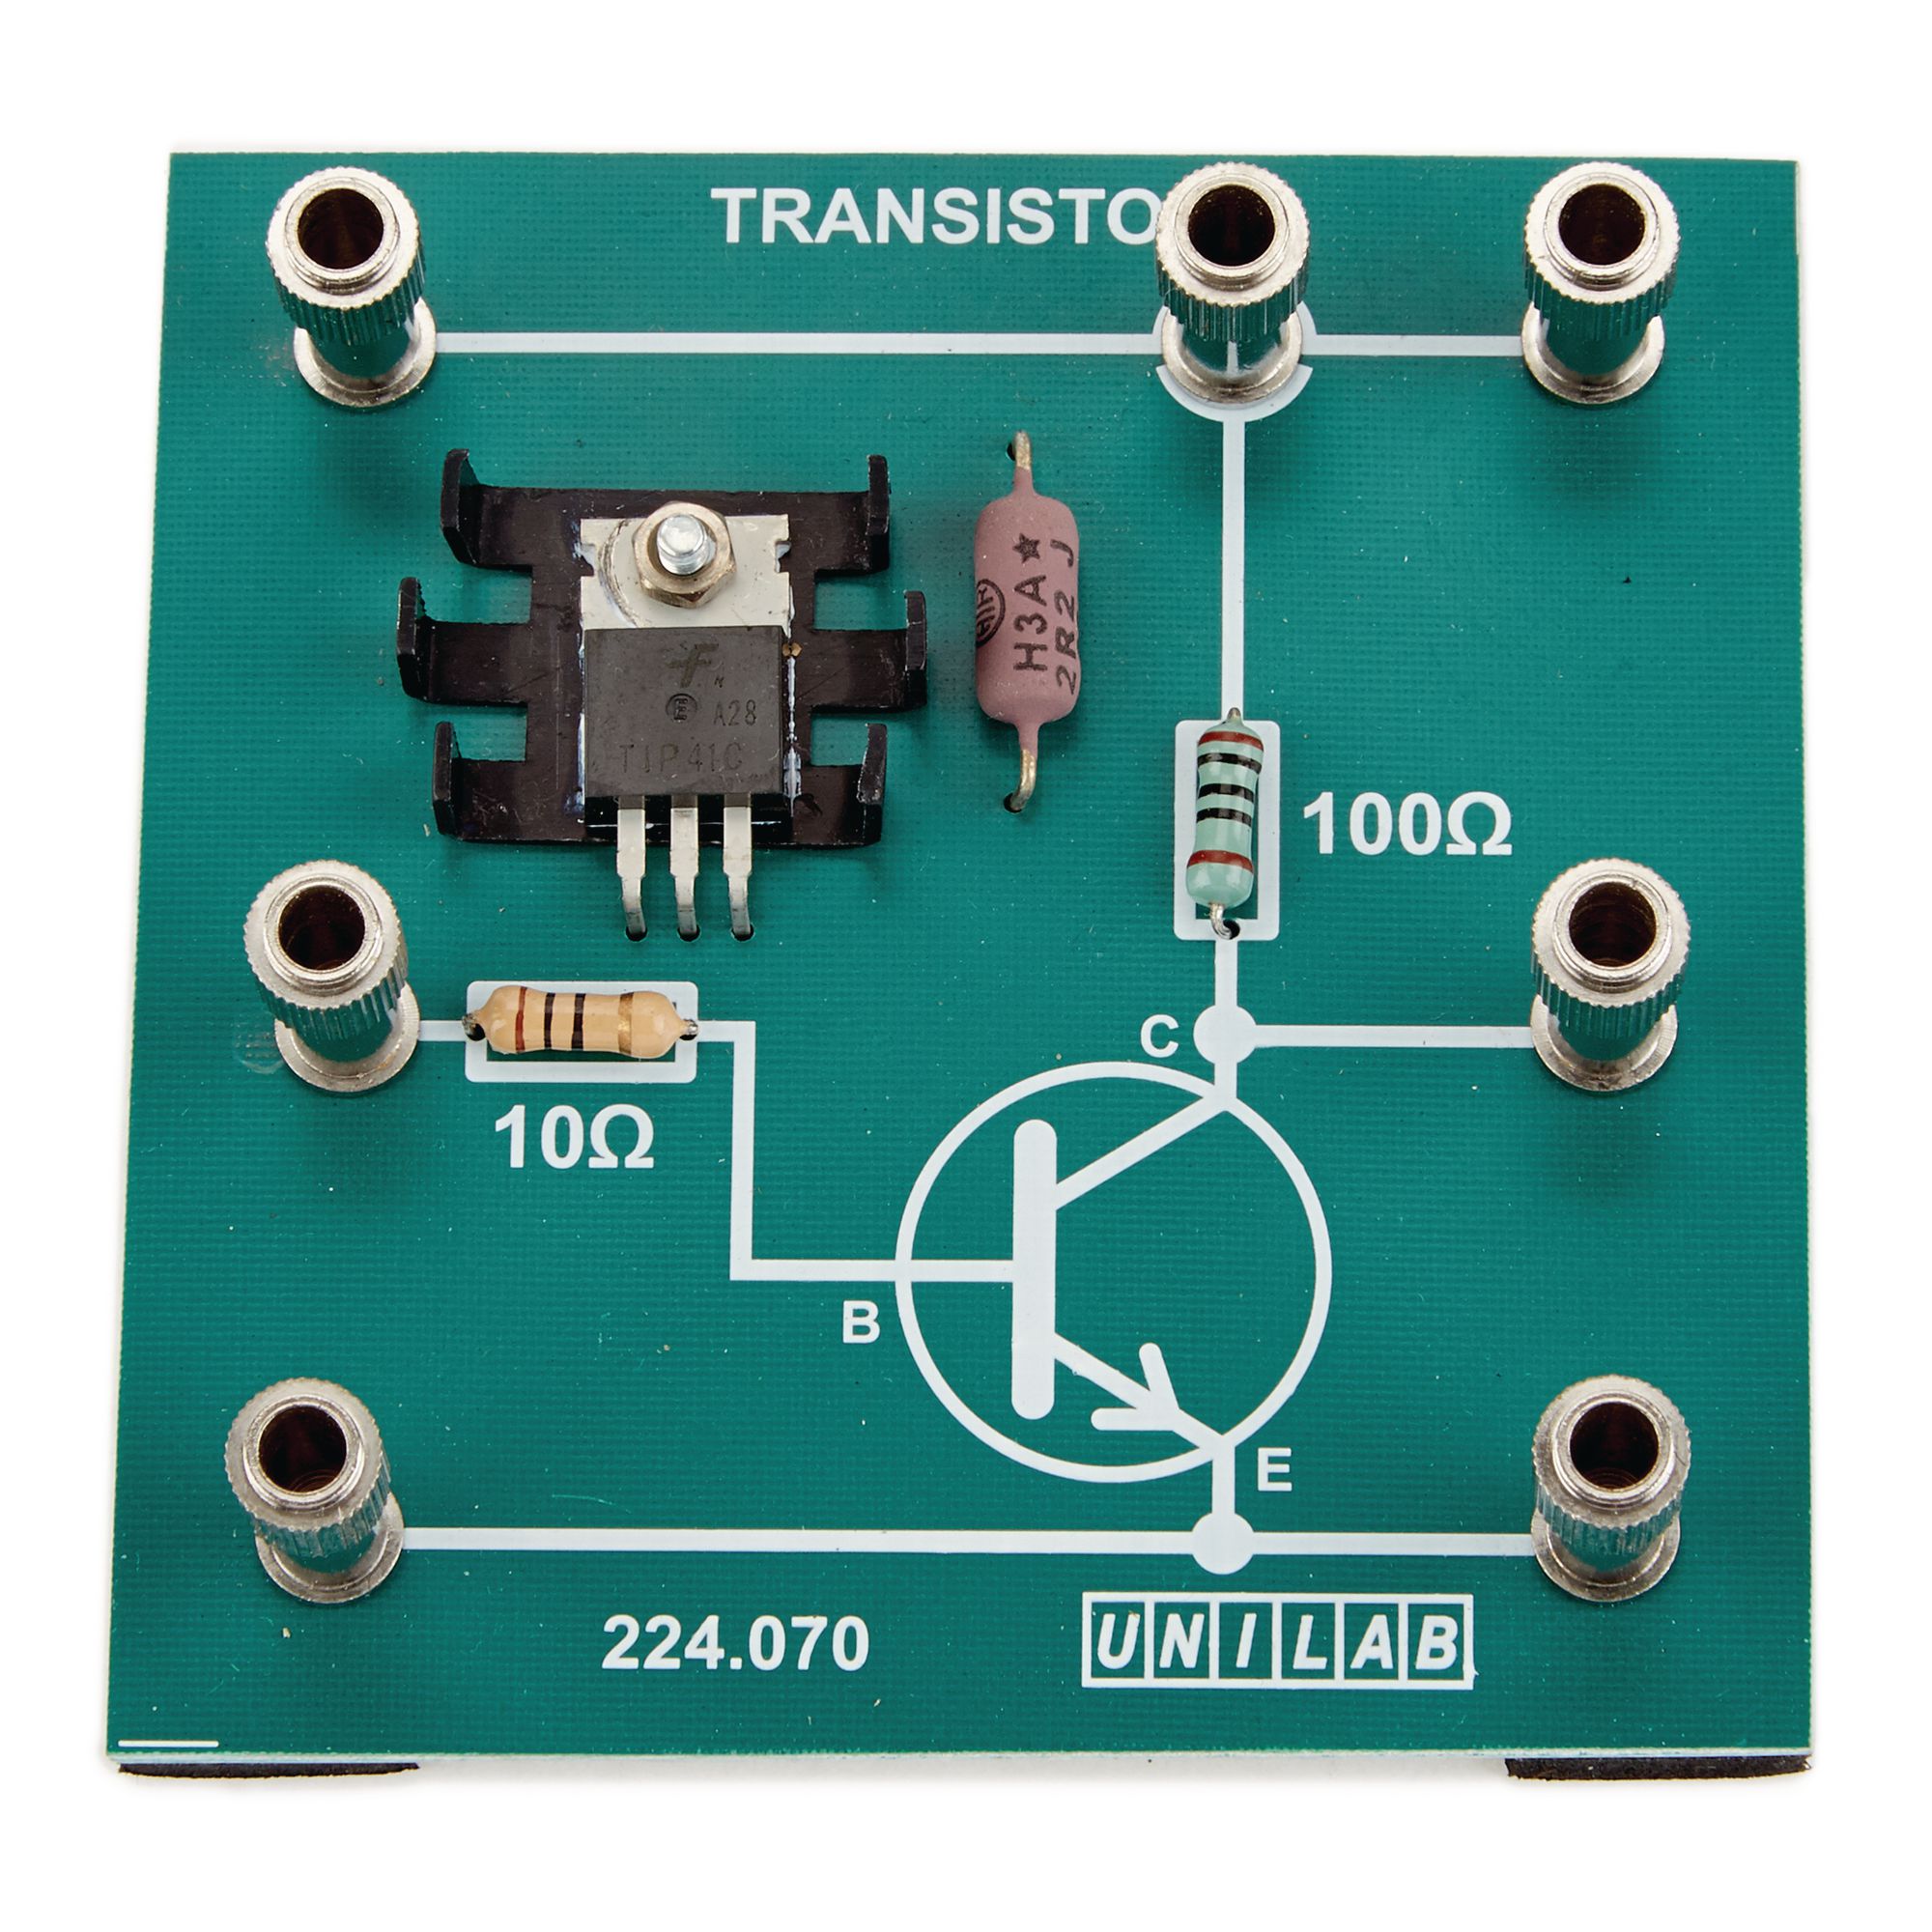 Transistor Board